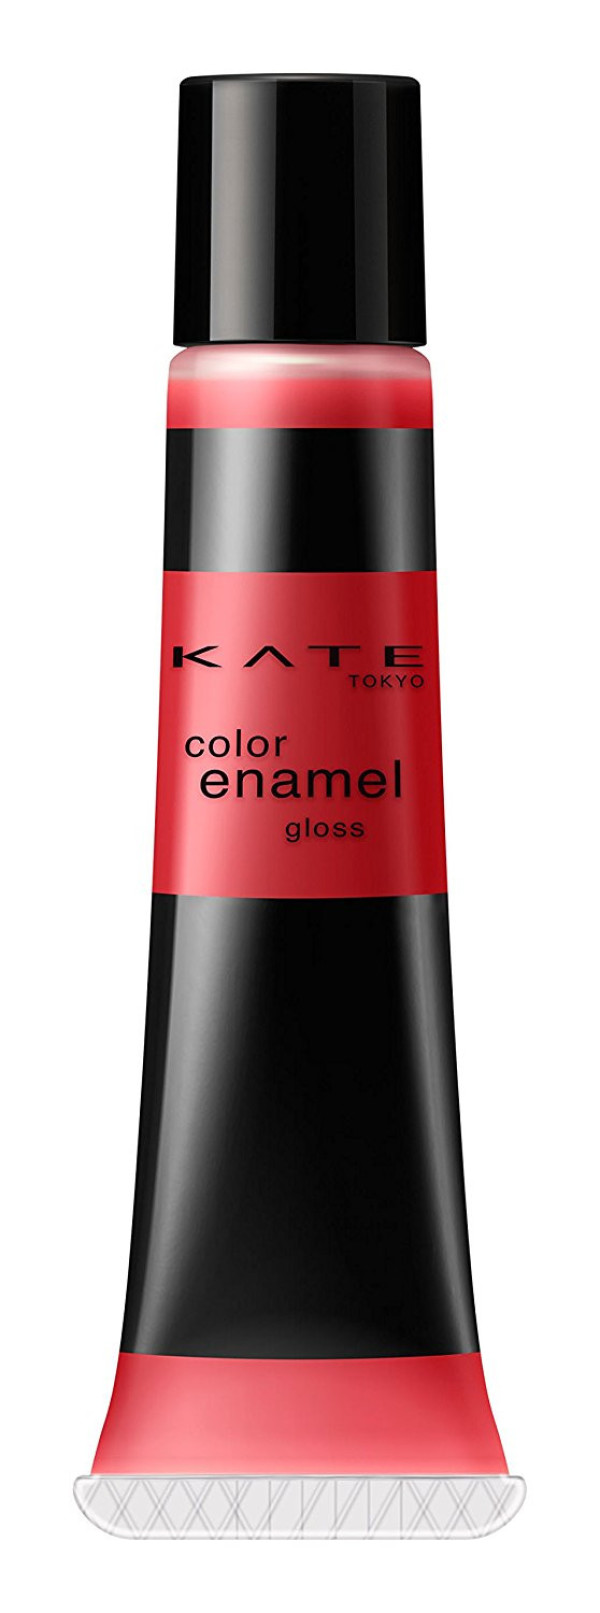 Kanebo Kate Color Enamel Lip Gloss